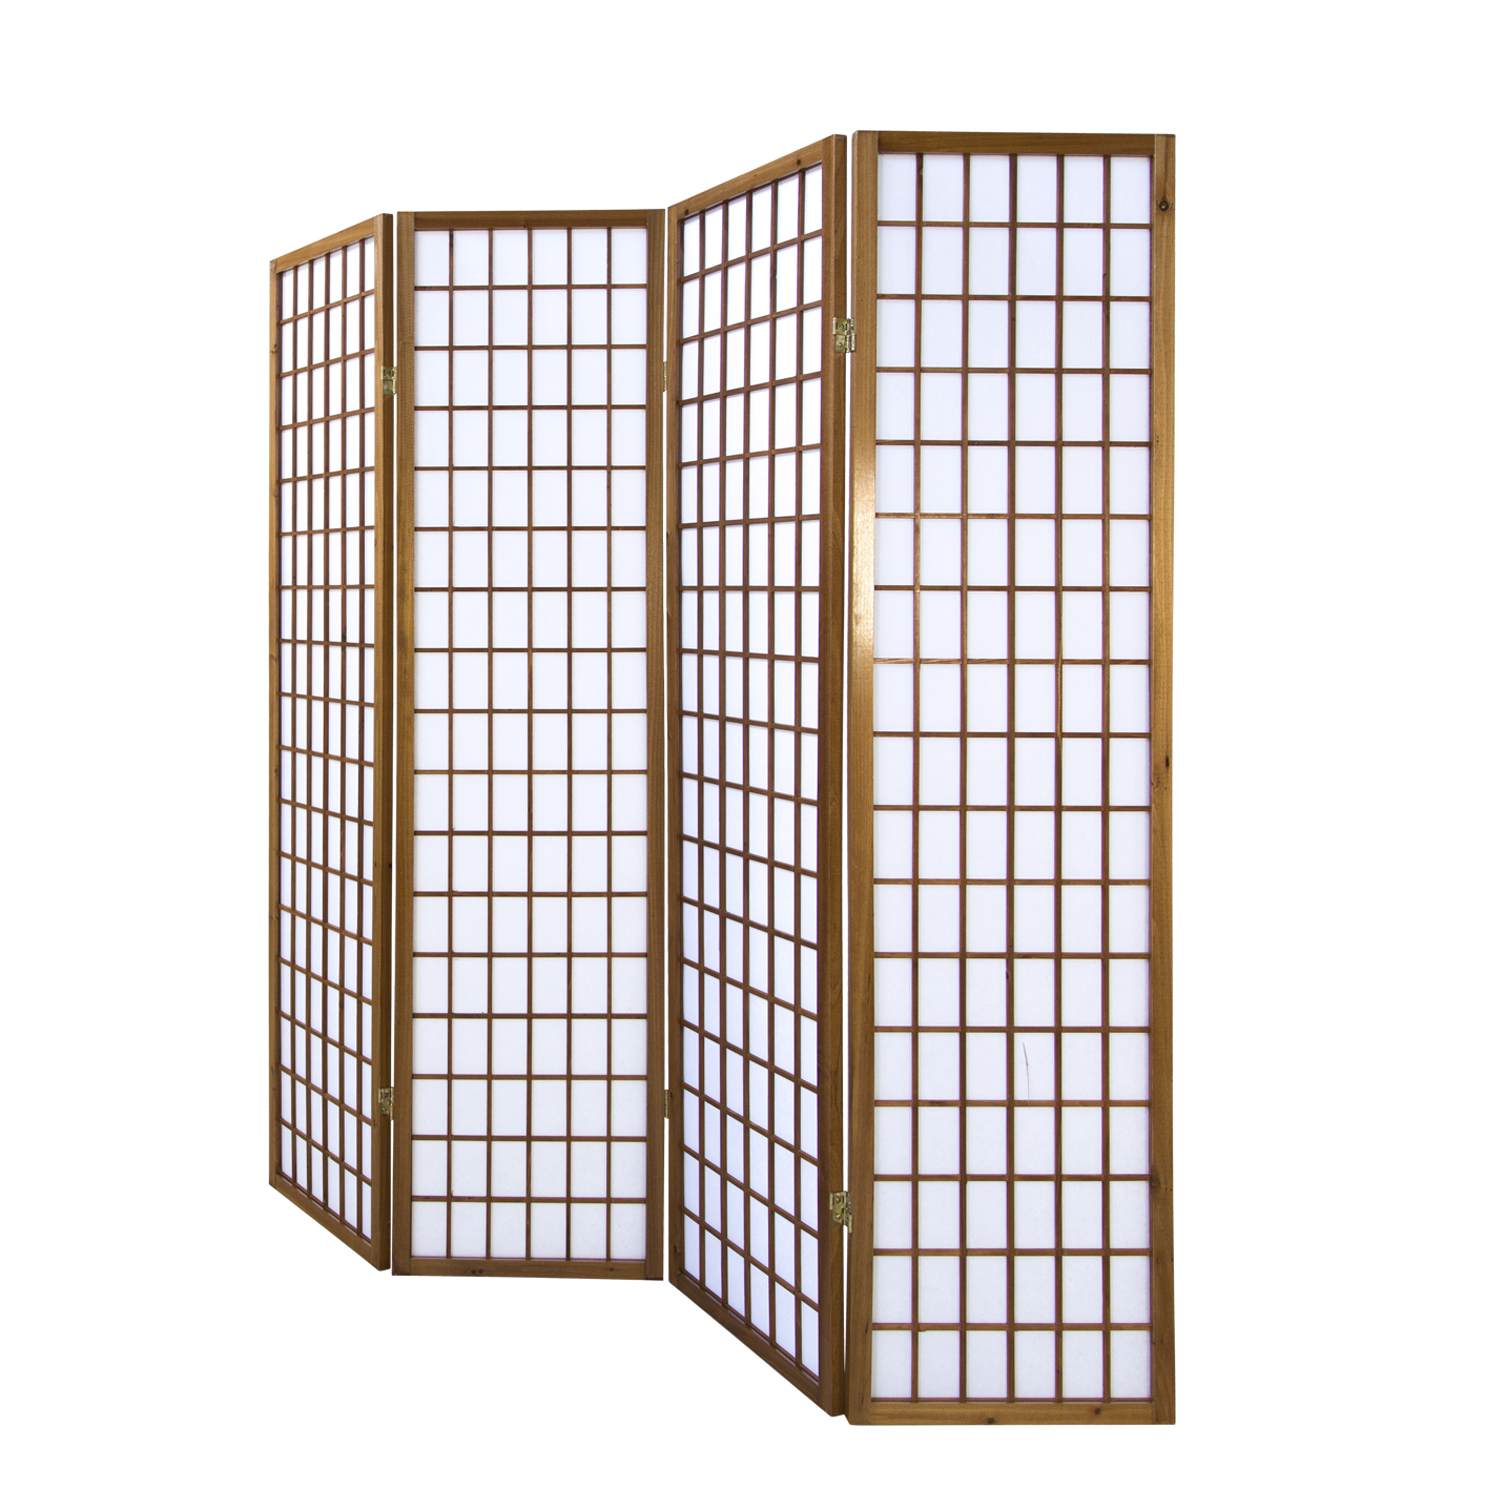 Paravent Raumteiler 4 teilig Braun Sichtschutz Trennwand Holz Shoji Reispapier Weiß